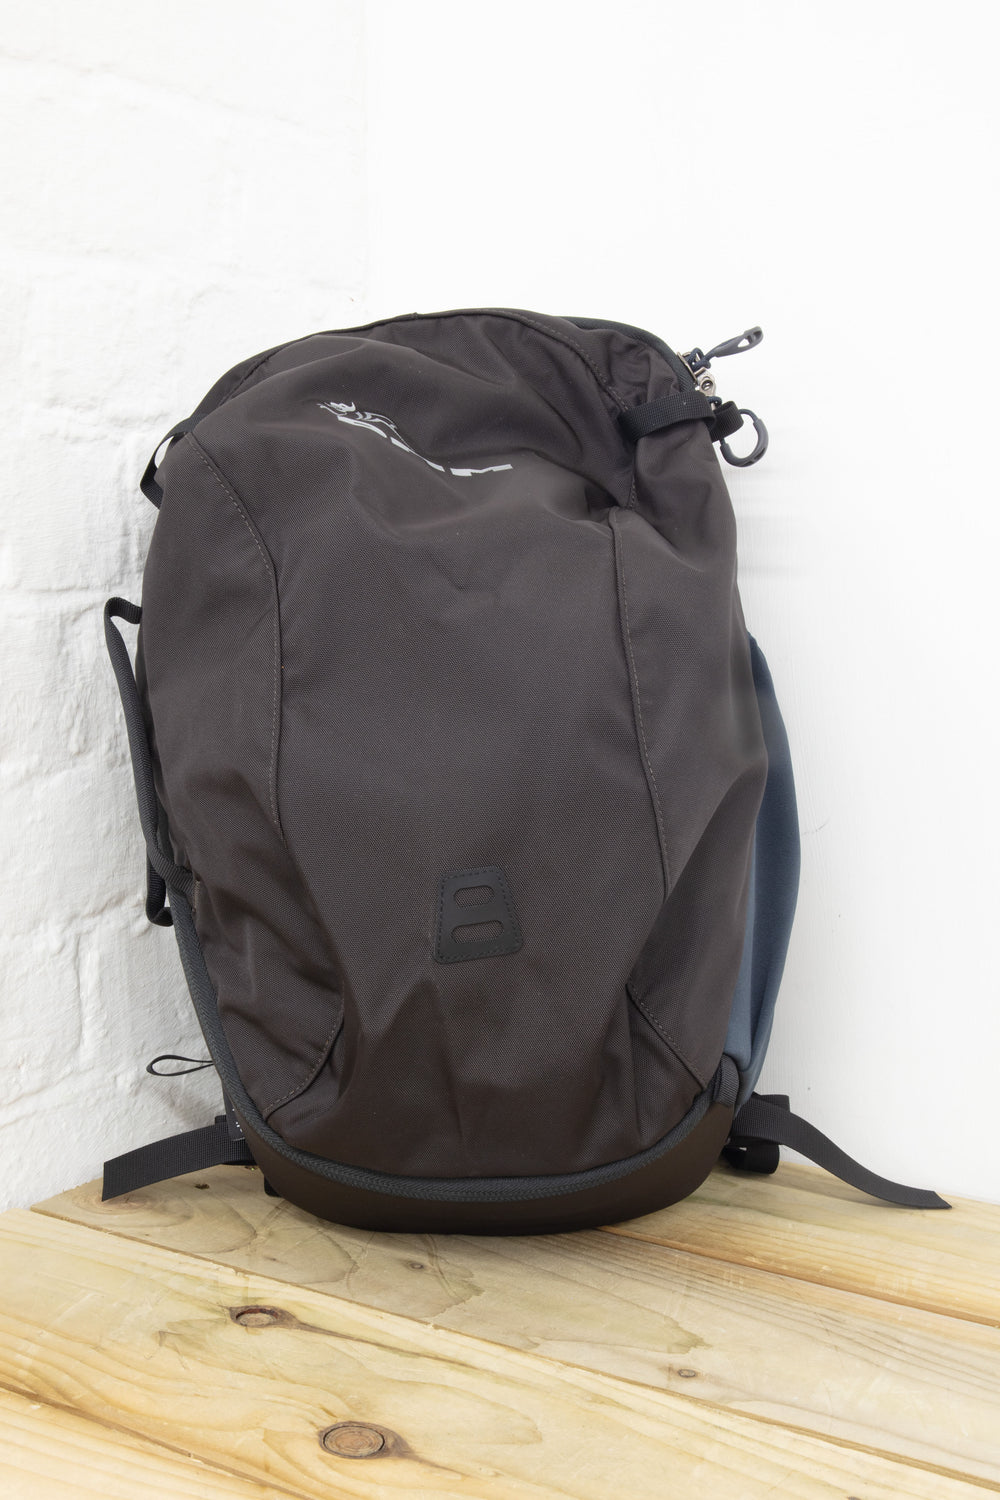 DMM - Short Haul Backpack 30L